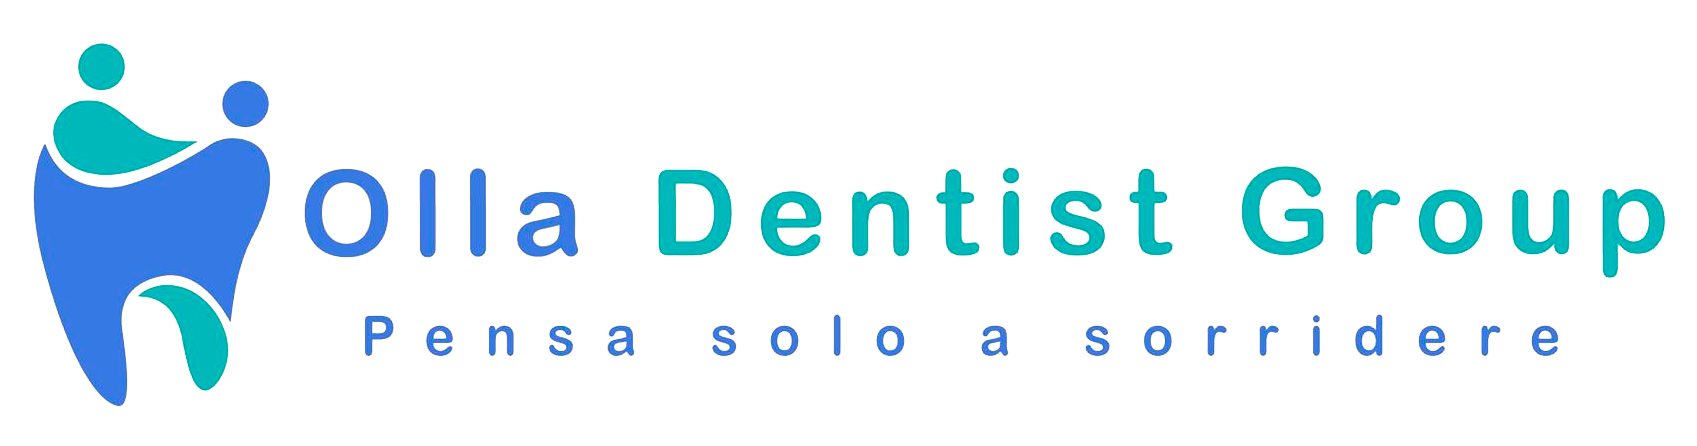 Olla Dentist Group